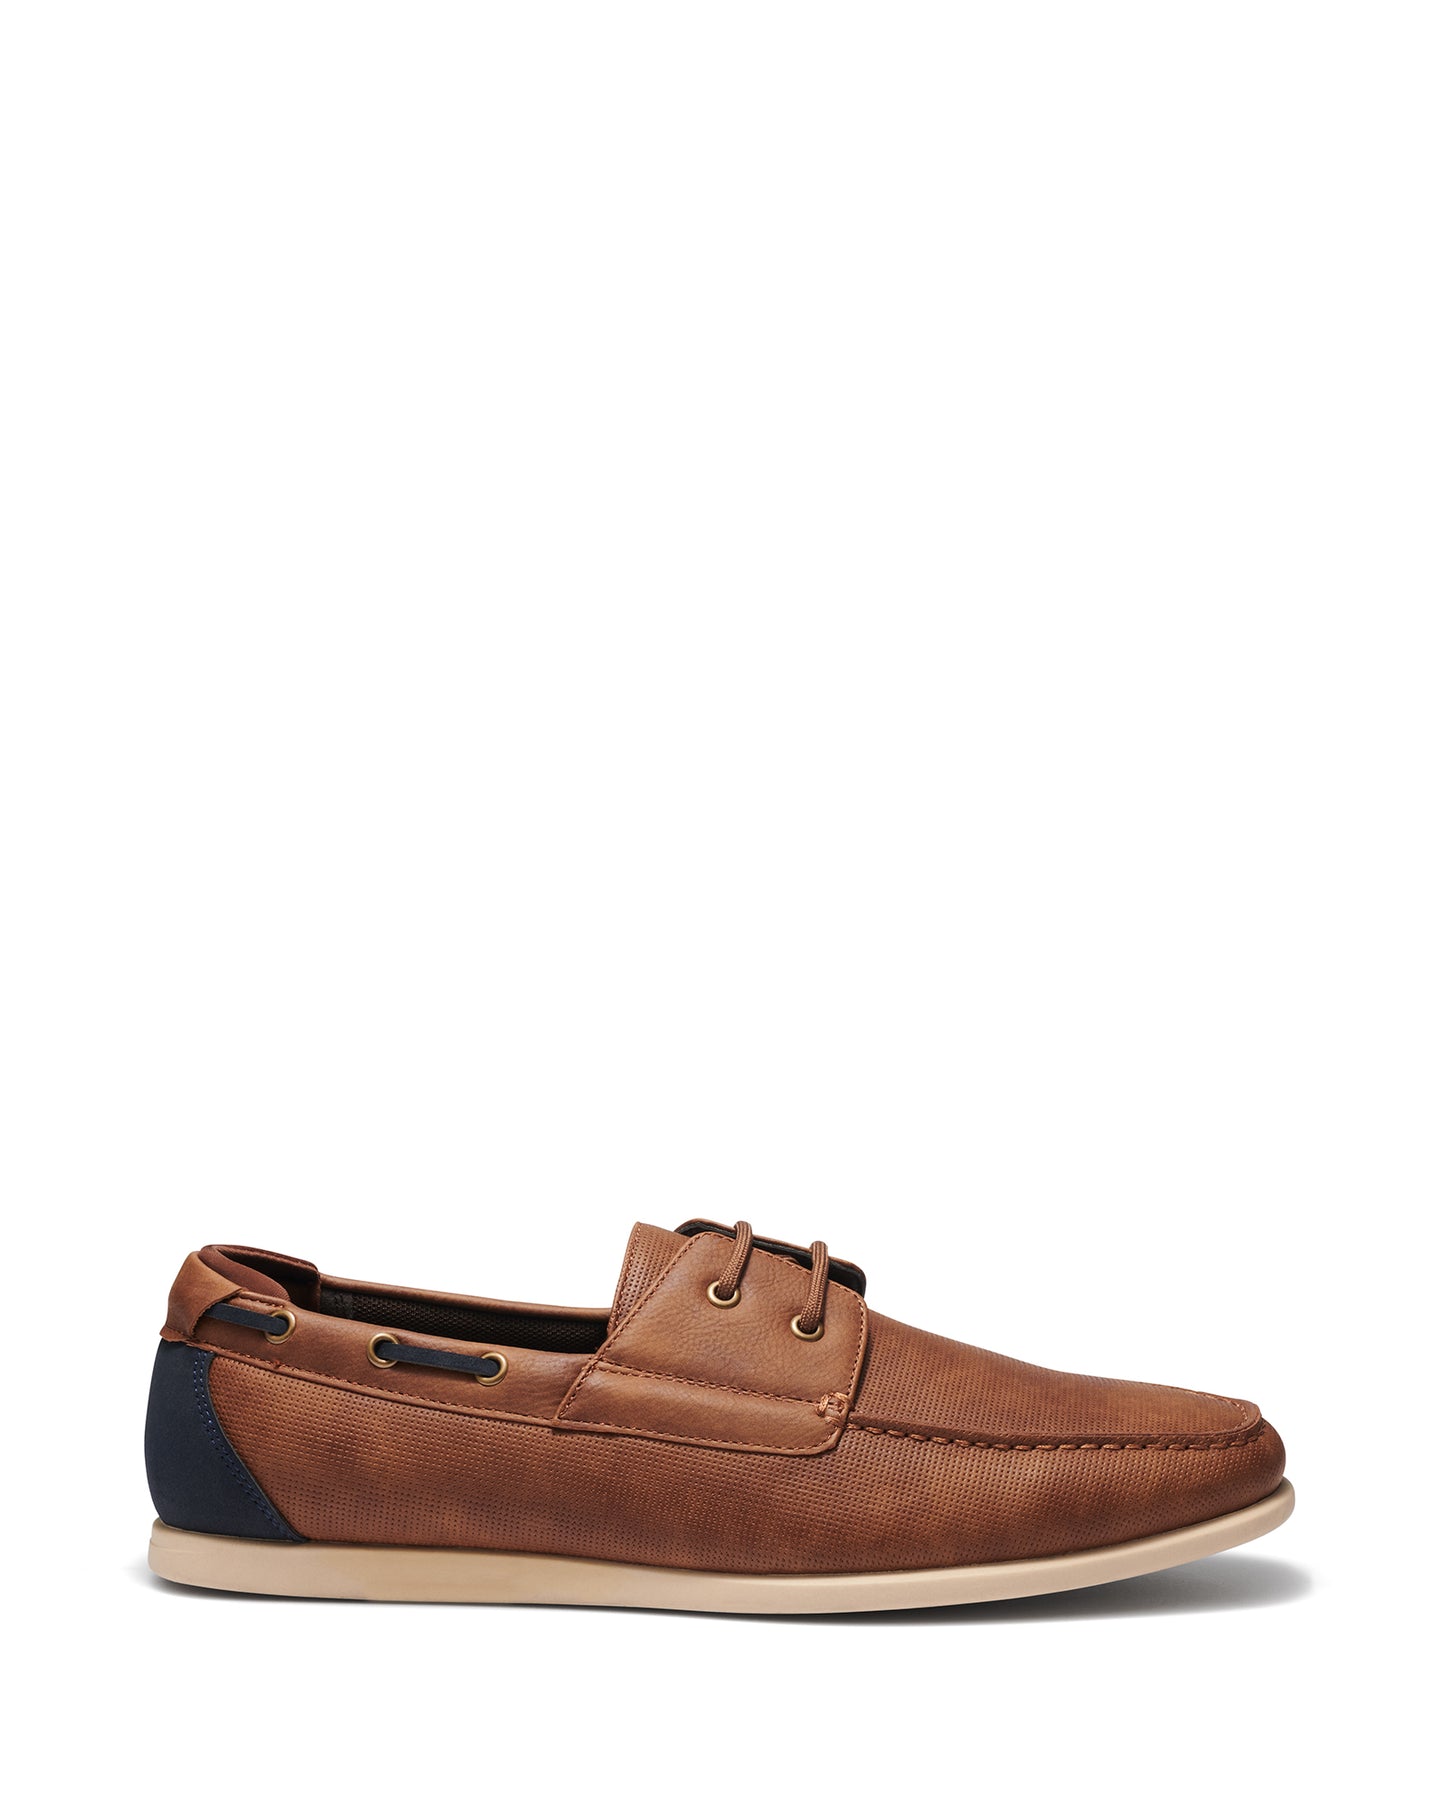 Uncut Shoes Langford Tan | Men's Boat Shoe | Loafer | Deck Shoe 